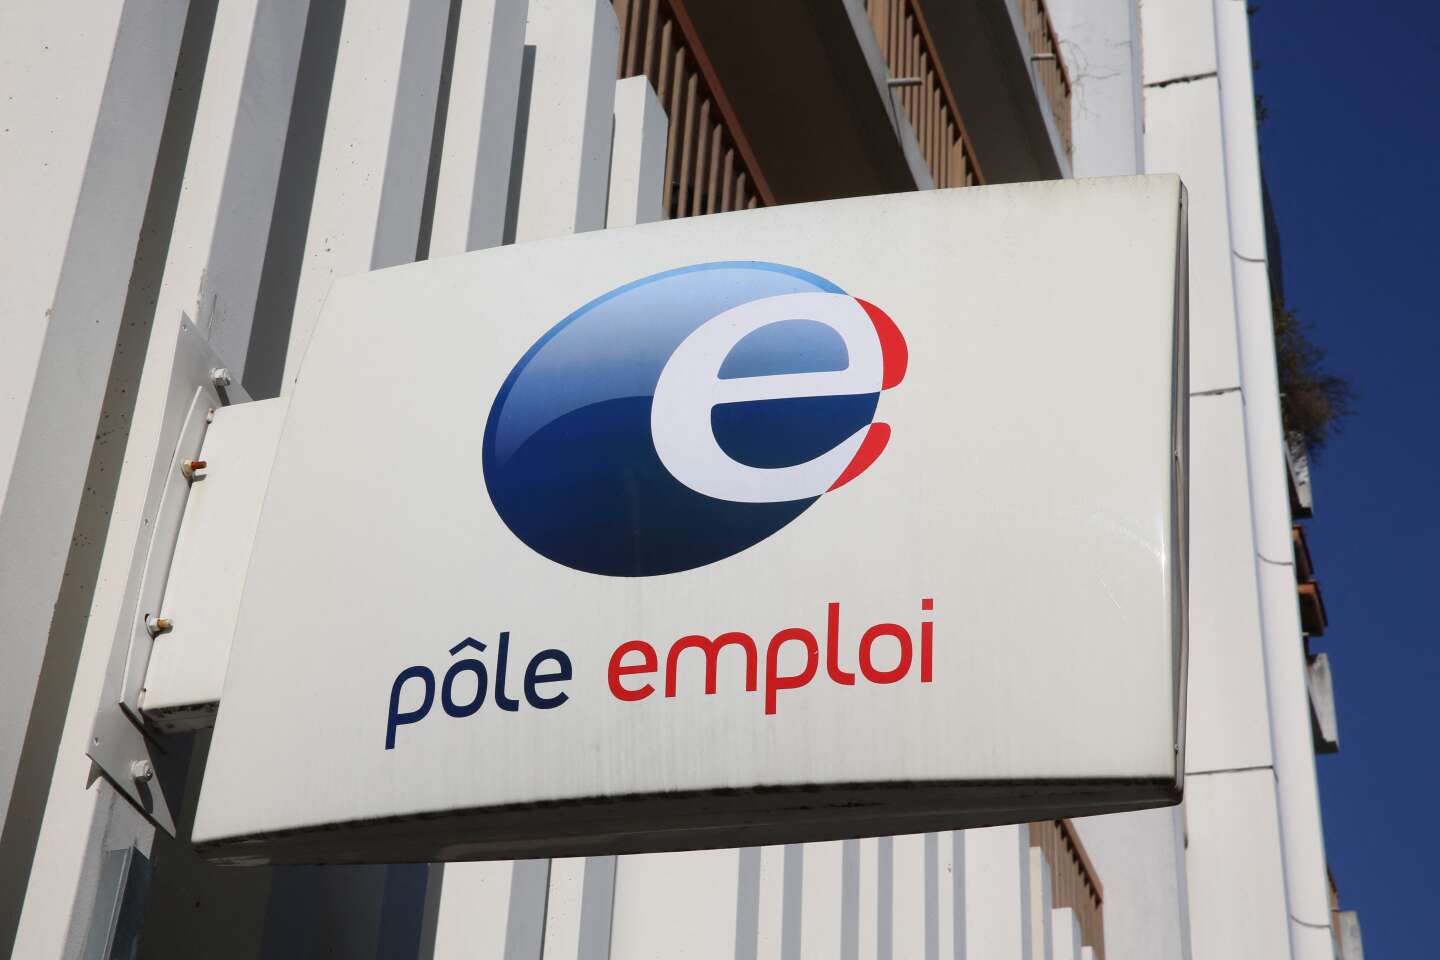 De Fransen zijn minder gehecht aan de werkloosheidsverzekering